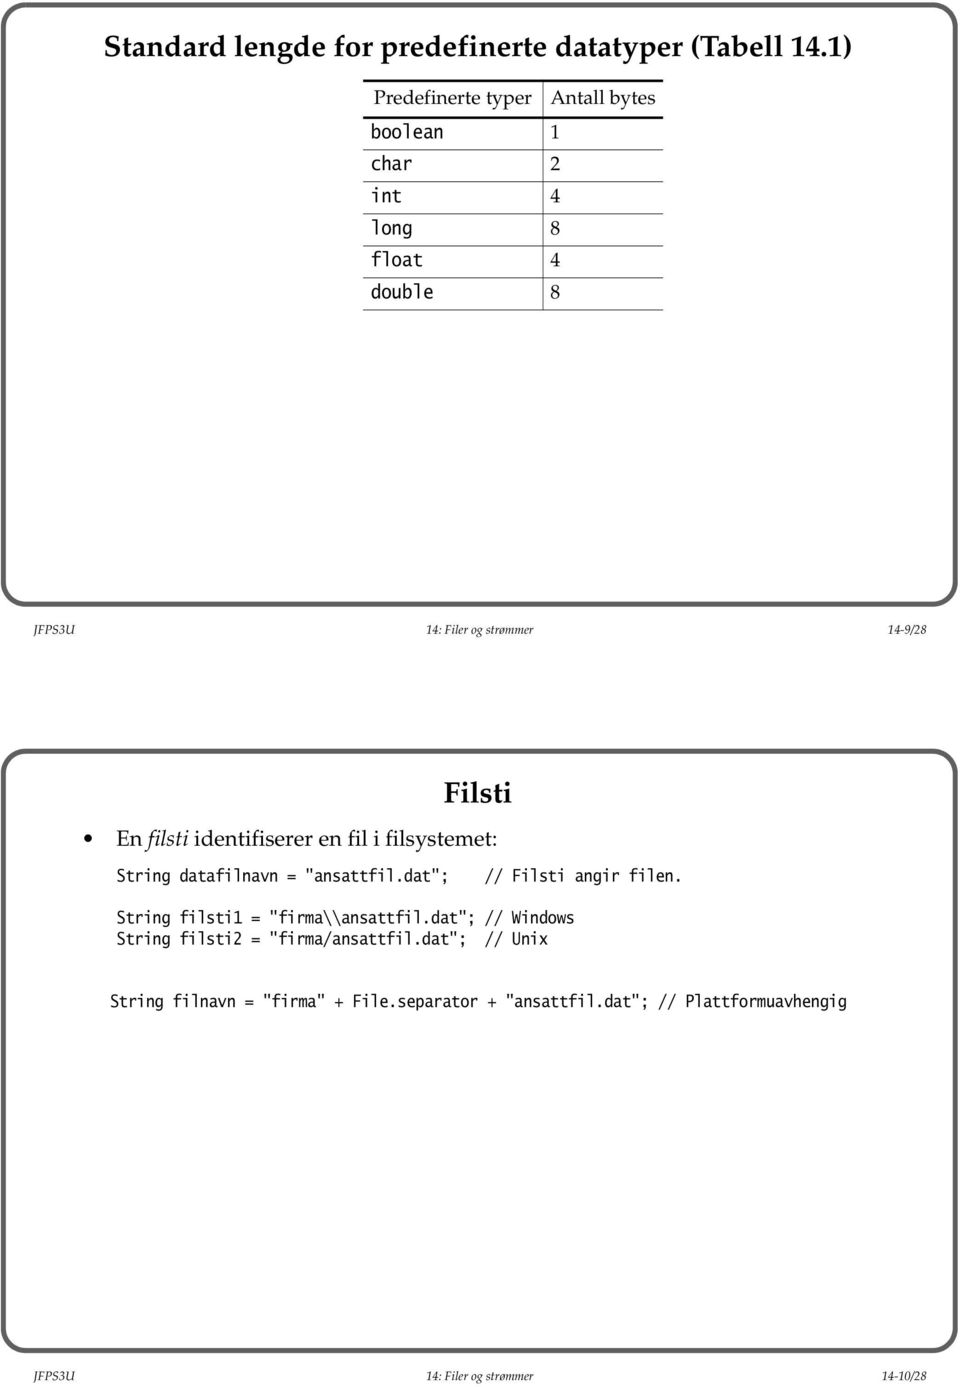 En filsti identifiserer en fil i filsystemet: String datafilnavn = "ansattfil.dat"; // Filsti angir filen.